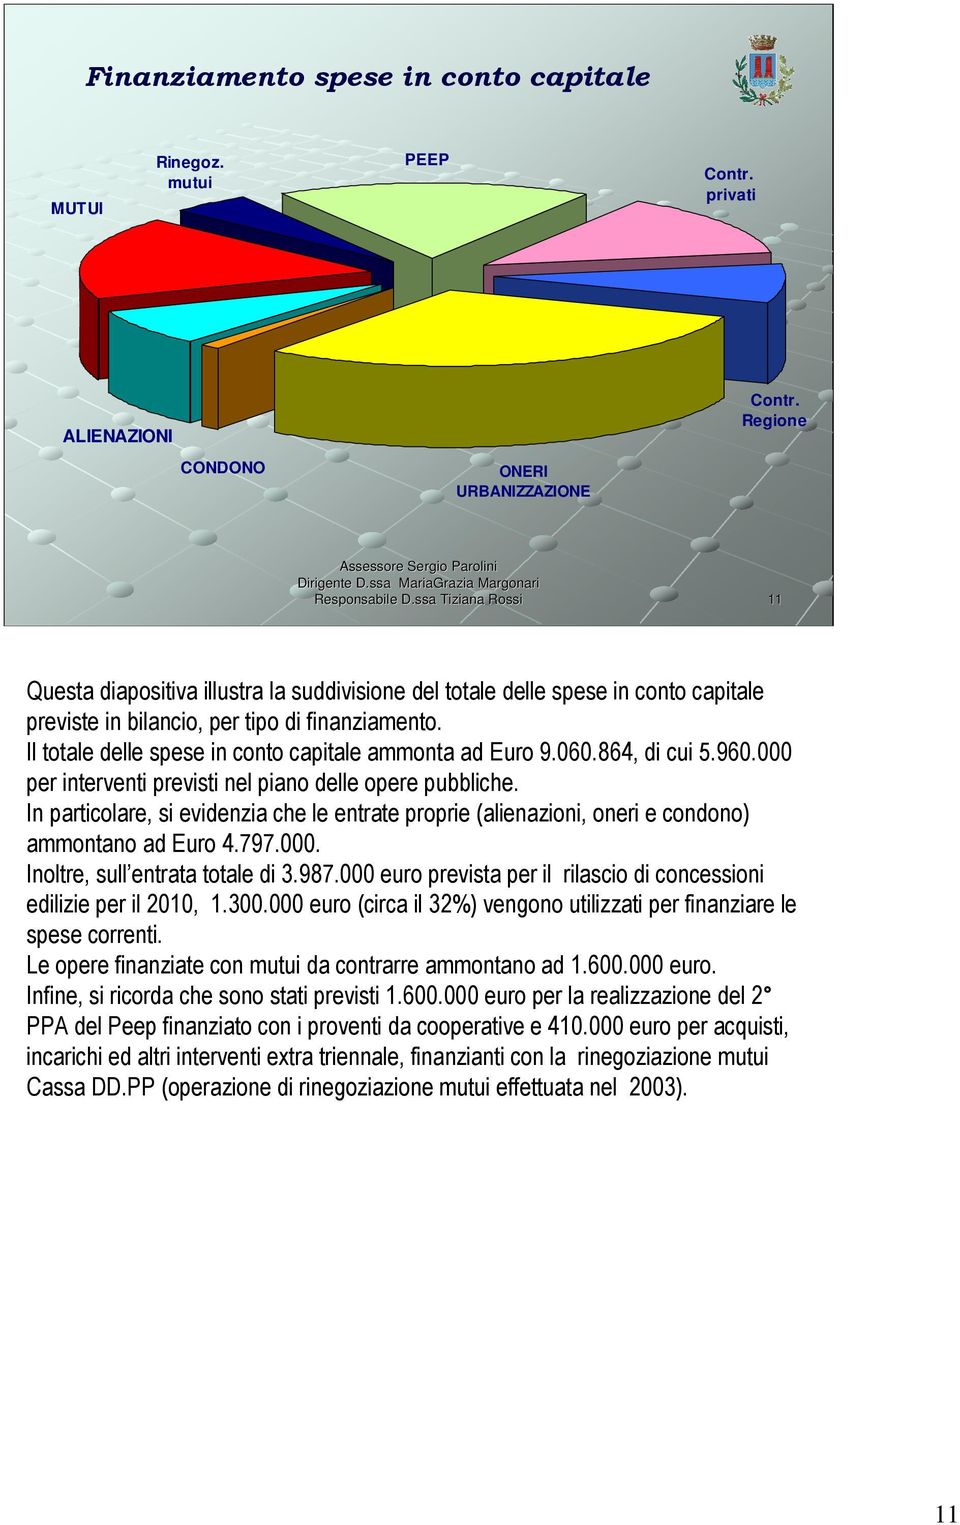 Il totale delle spese in conto capitale ammonta ad Euro 9.060.864, di cui 5.960.000 per interventi previsti nel piano delle opere pubbliche.